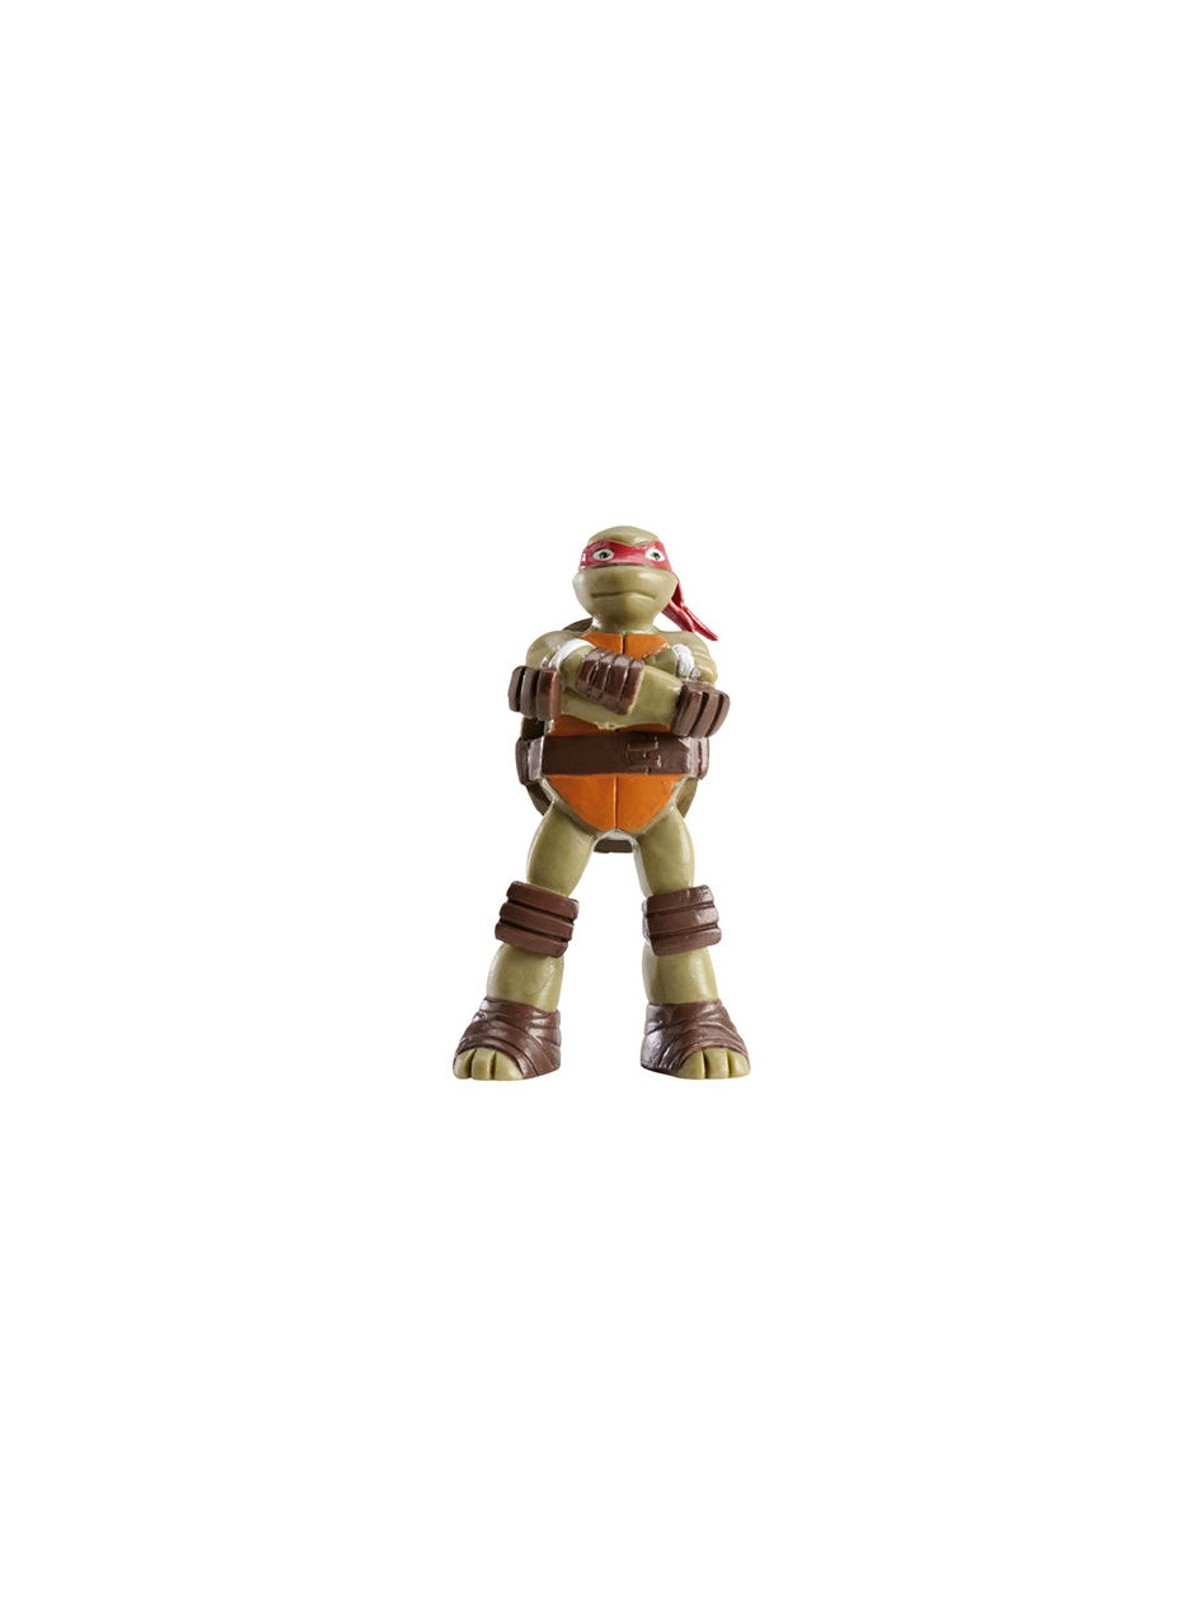 Dekora - Dekorative Figur -  Ninja Turtles - Raphael - rot